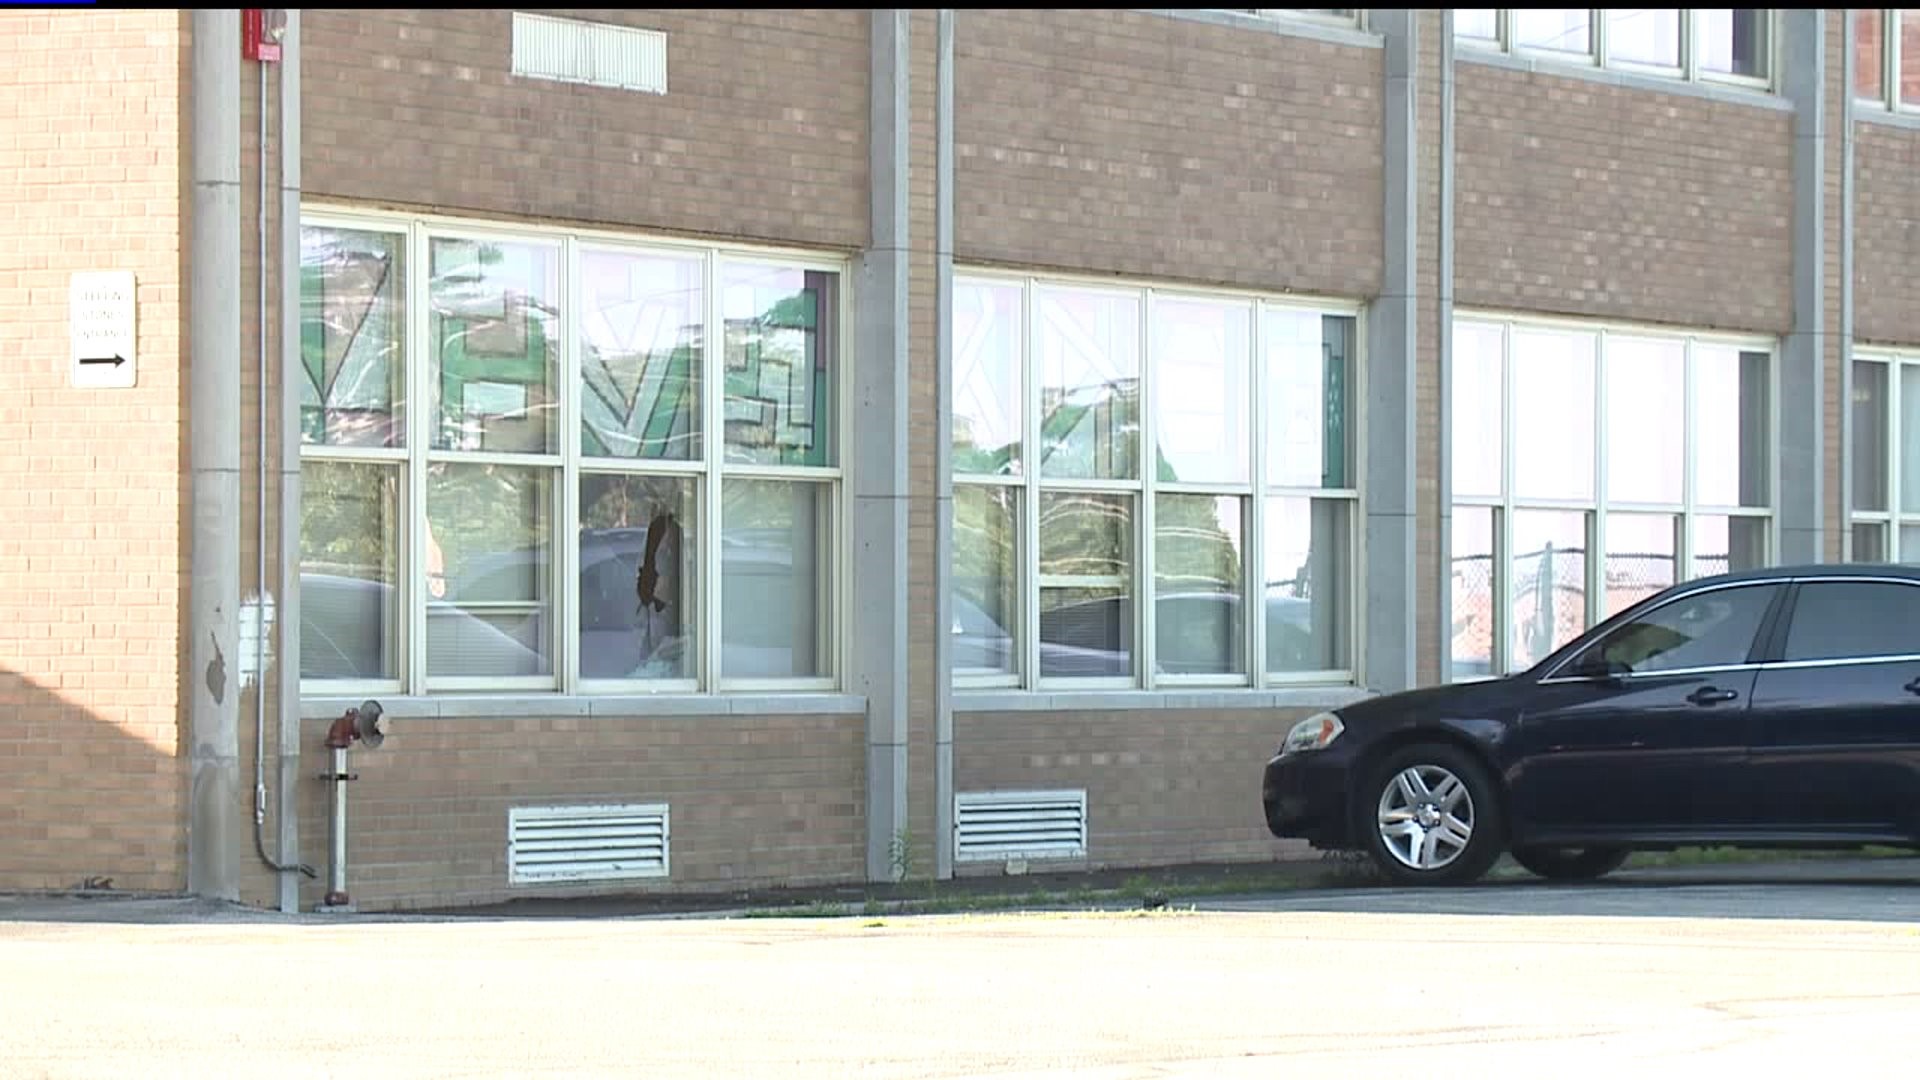 Lincoln School in Davenport vandelized